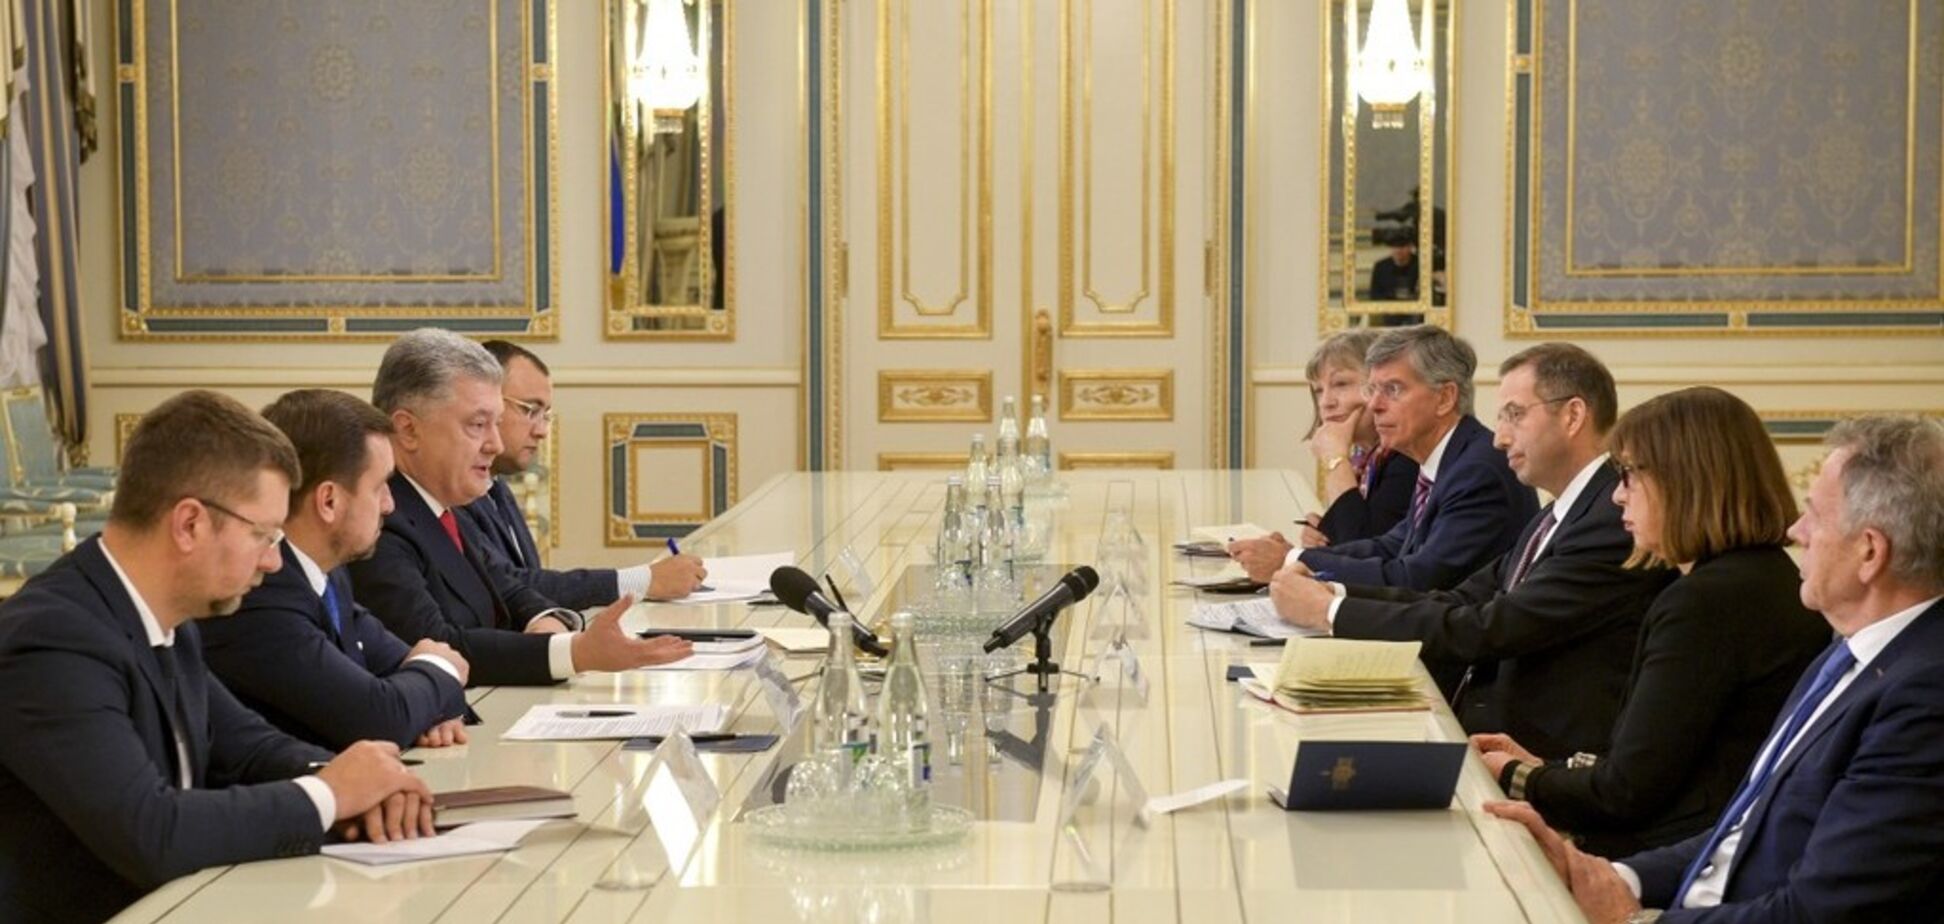 Поддержали в борьбе с Россией: Порошенко рассказал о встрече с представителями США и ЕС